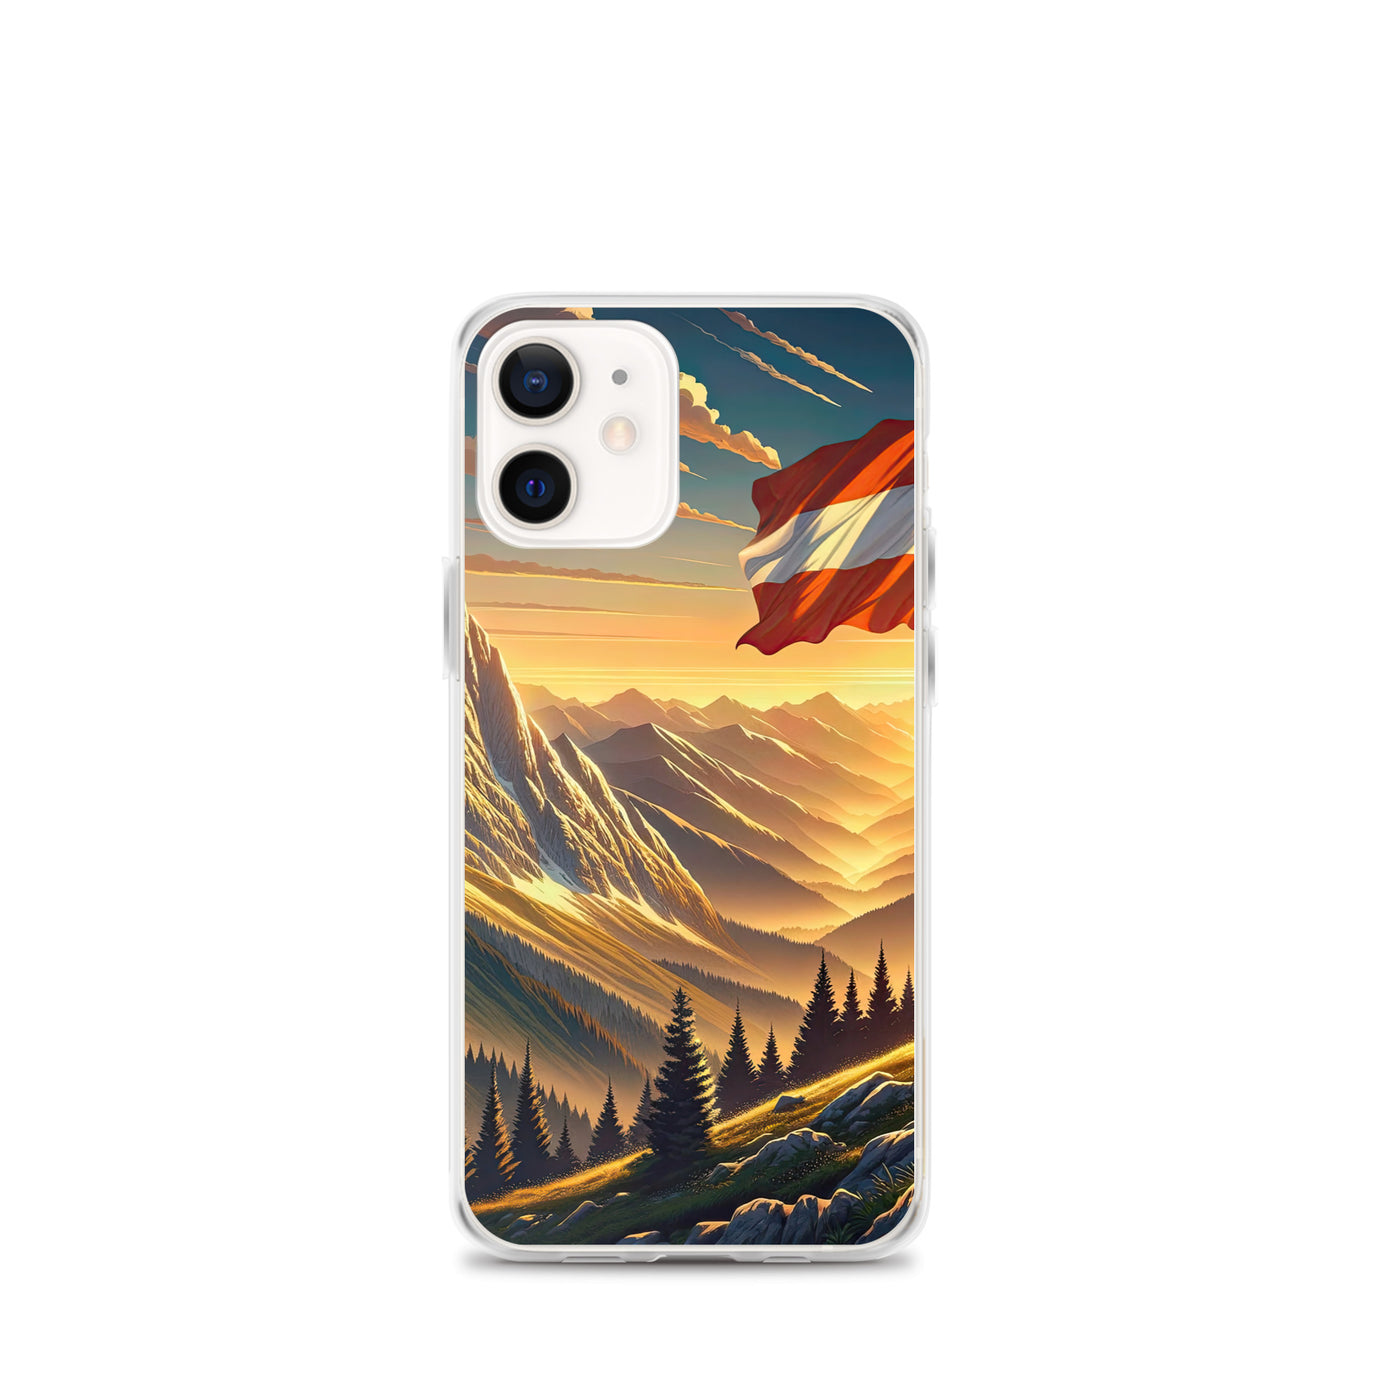 Ruhiger Alpenabend mit österreichischer Flagge und goldenem Sonnenuntergang - iPhone Schutzhülle (durchsichtig) berge xxx yyy zzz iPhone 12 mini